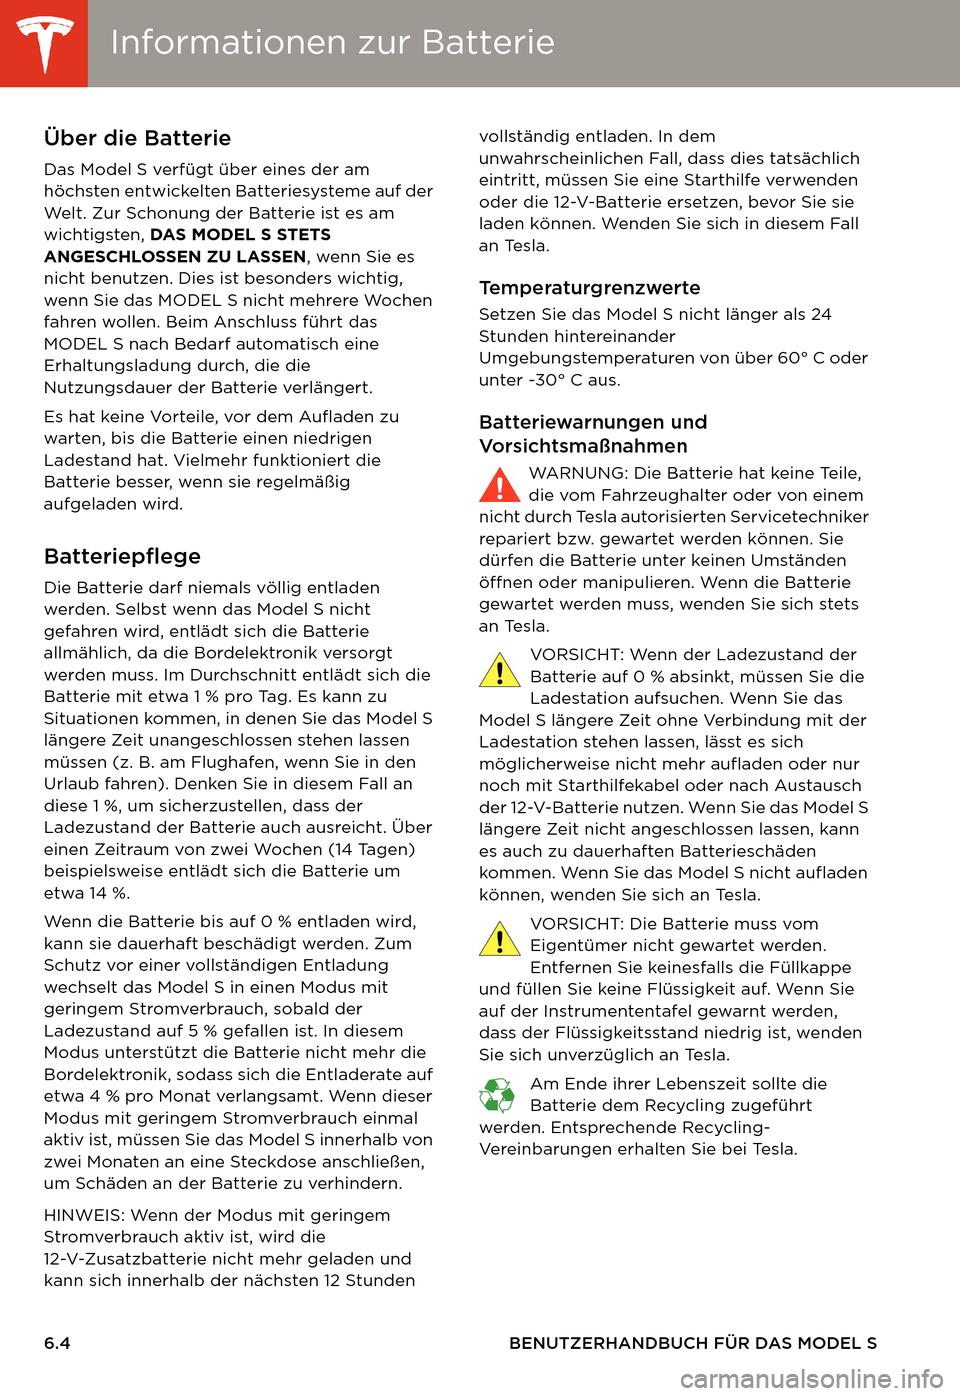 TESLA MODEL S 2014  Betriebsanleitung (in German) Informationen zur BatterieInformationen zur Batterie
6.4 BENUTZERHANDBUCH FÜR DAS MODEL S
Informationen zur BatterieÜber die Batterie
Das Model S verfügt über eines der am 
höchsten entwickelten 